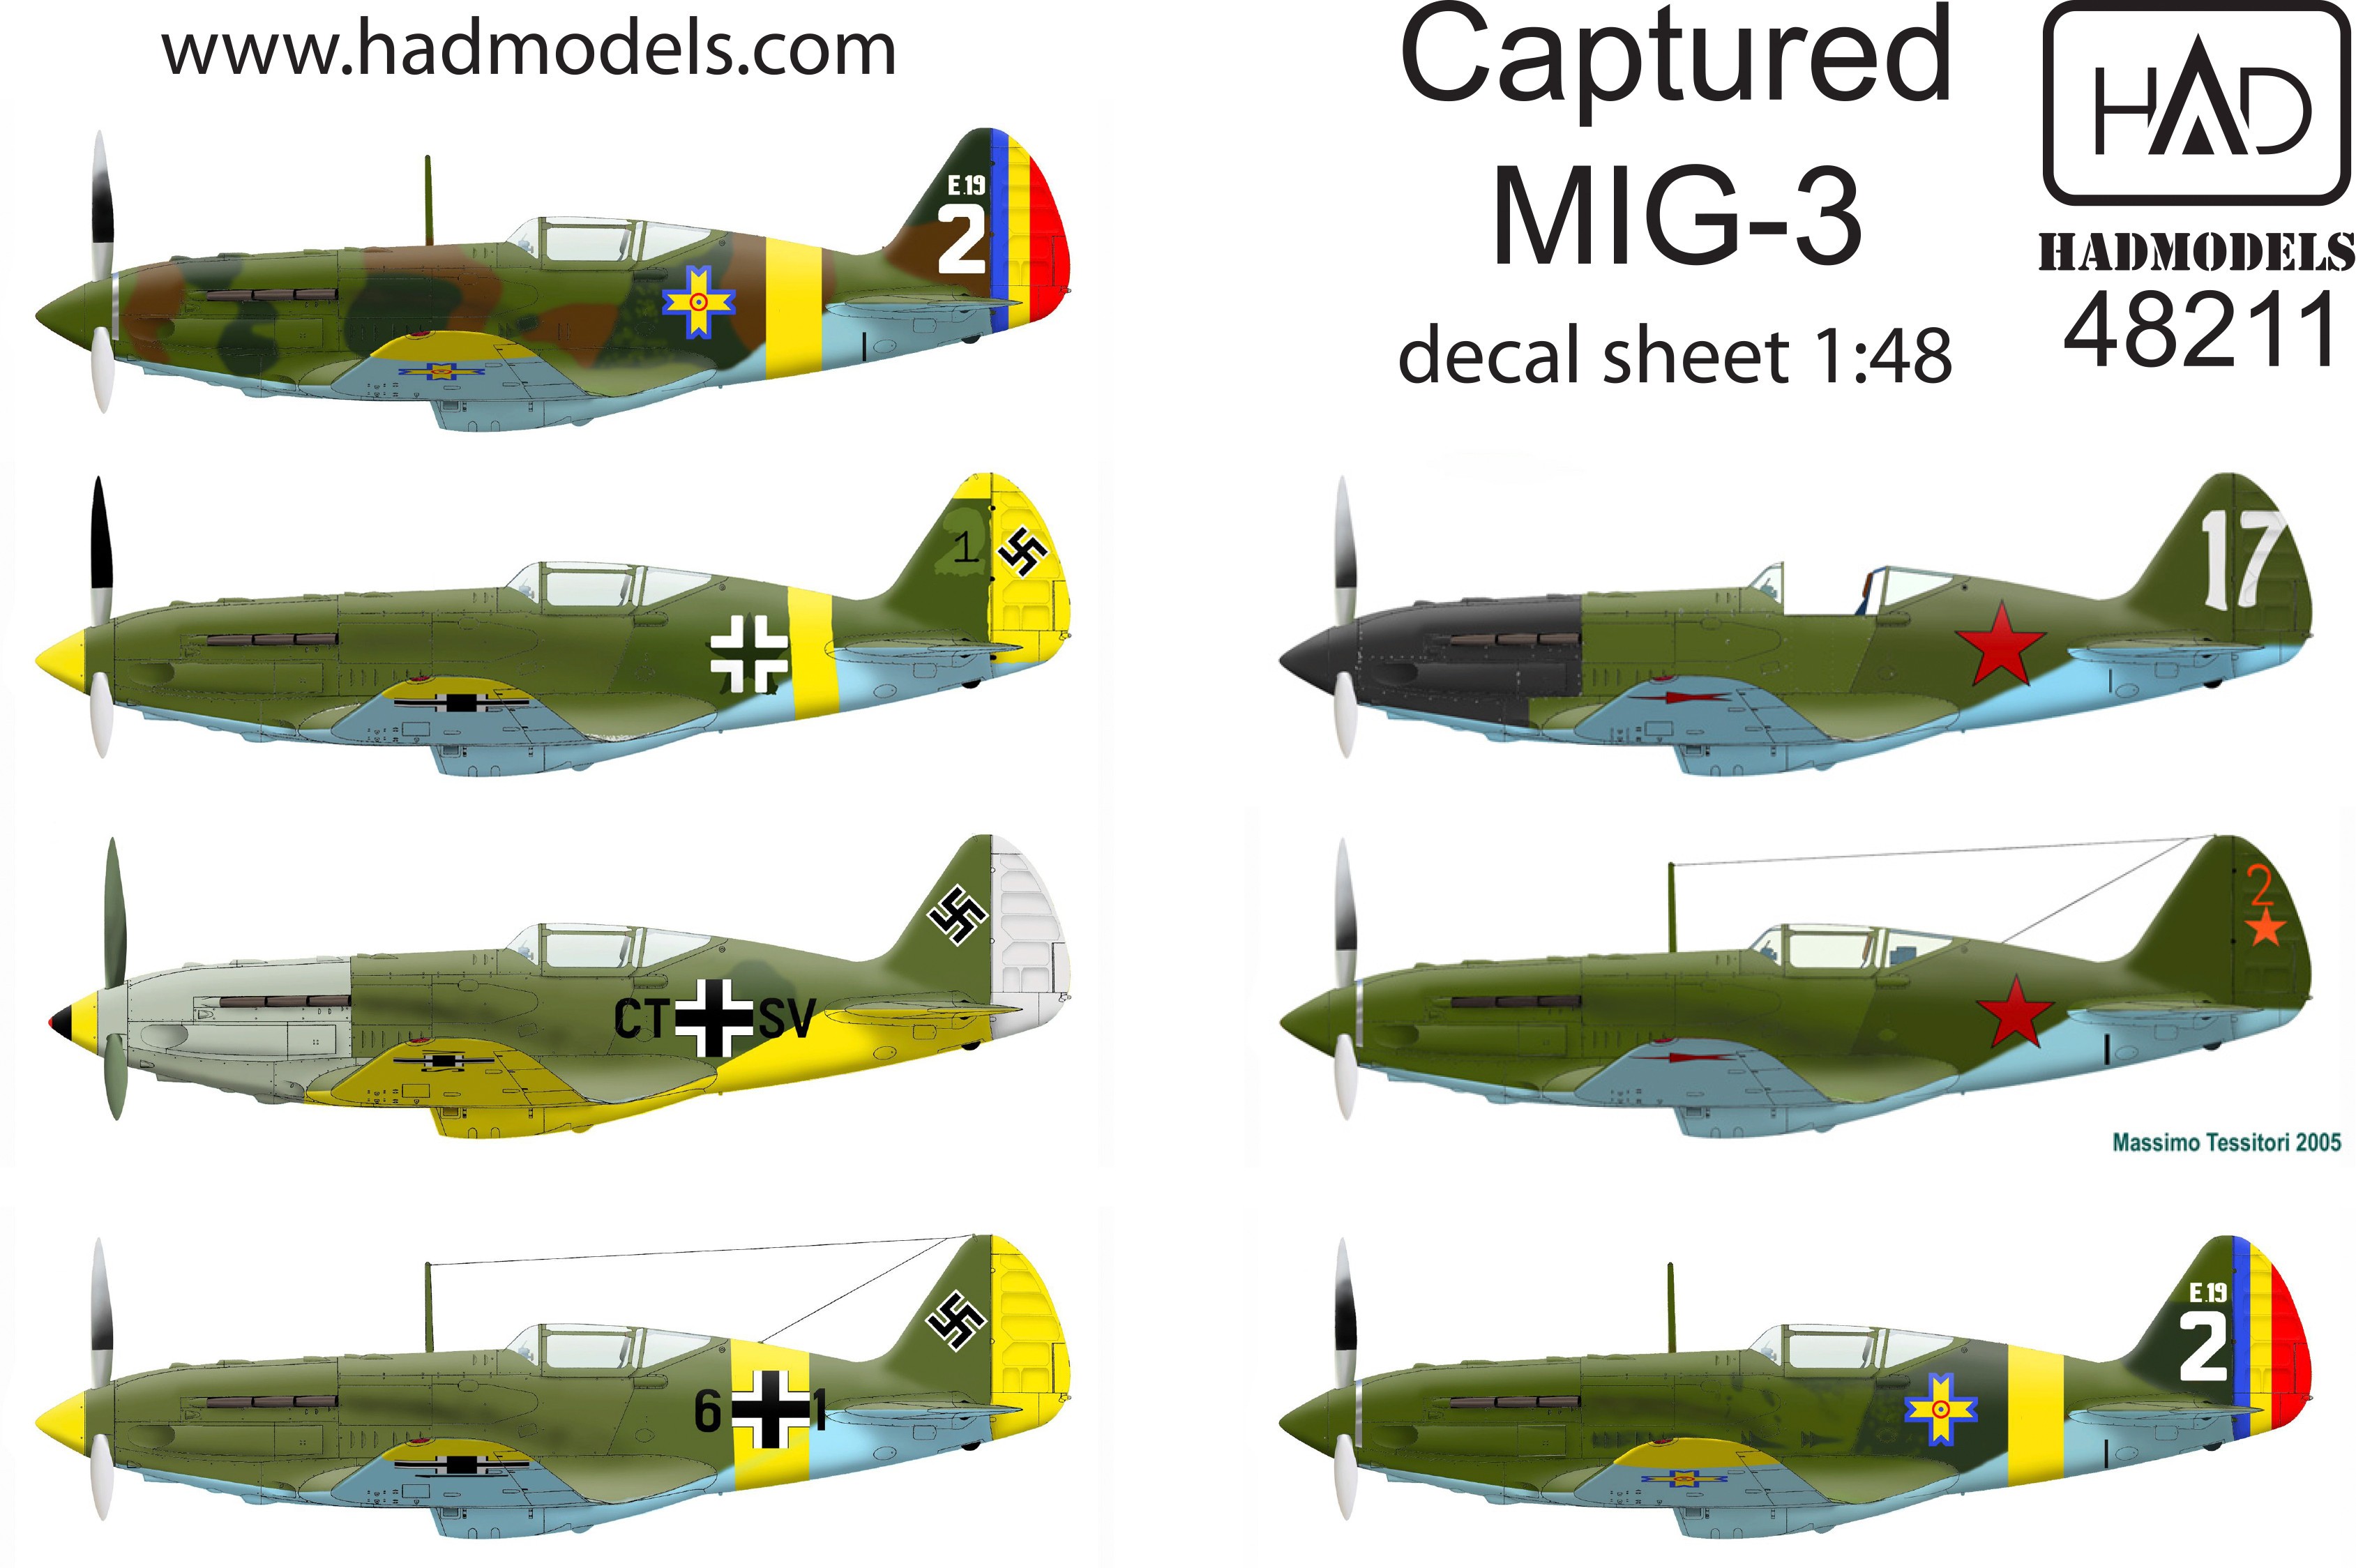  HAD Models Décal Capturé Mikoyan MiG-3- 1/48 - Accessoires